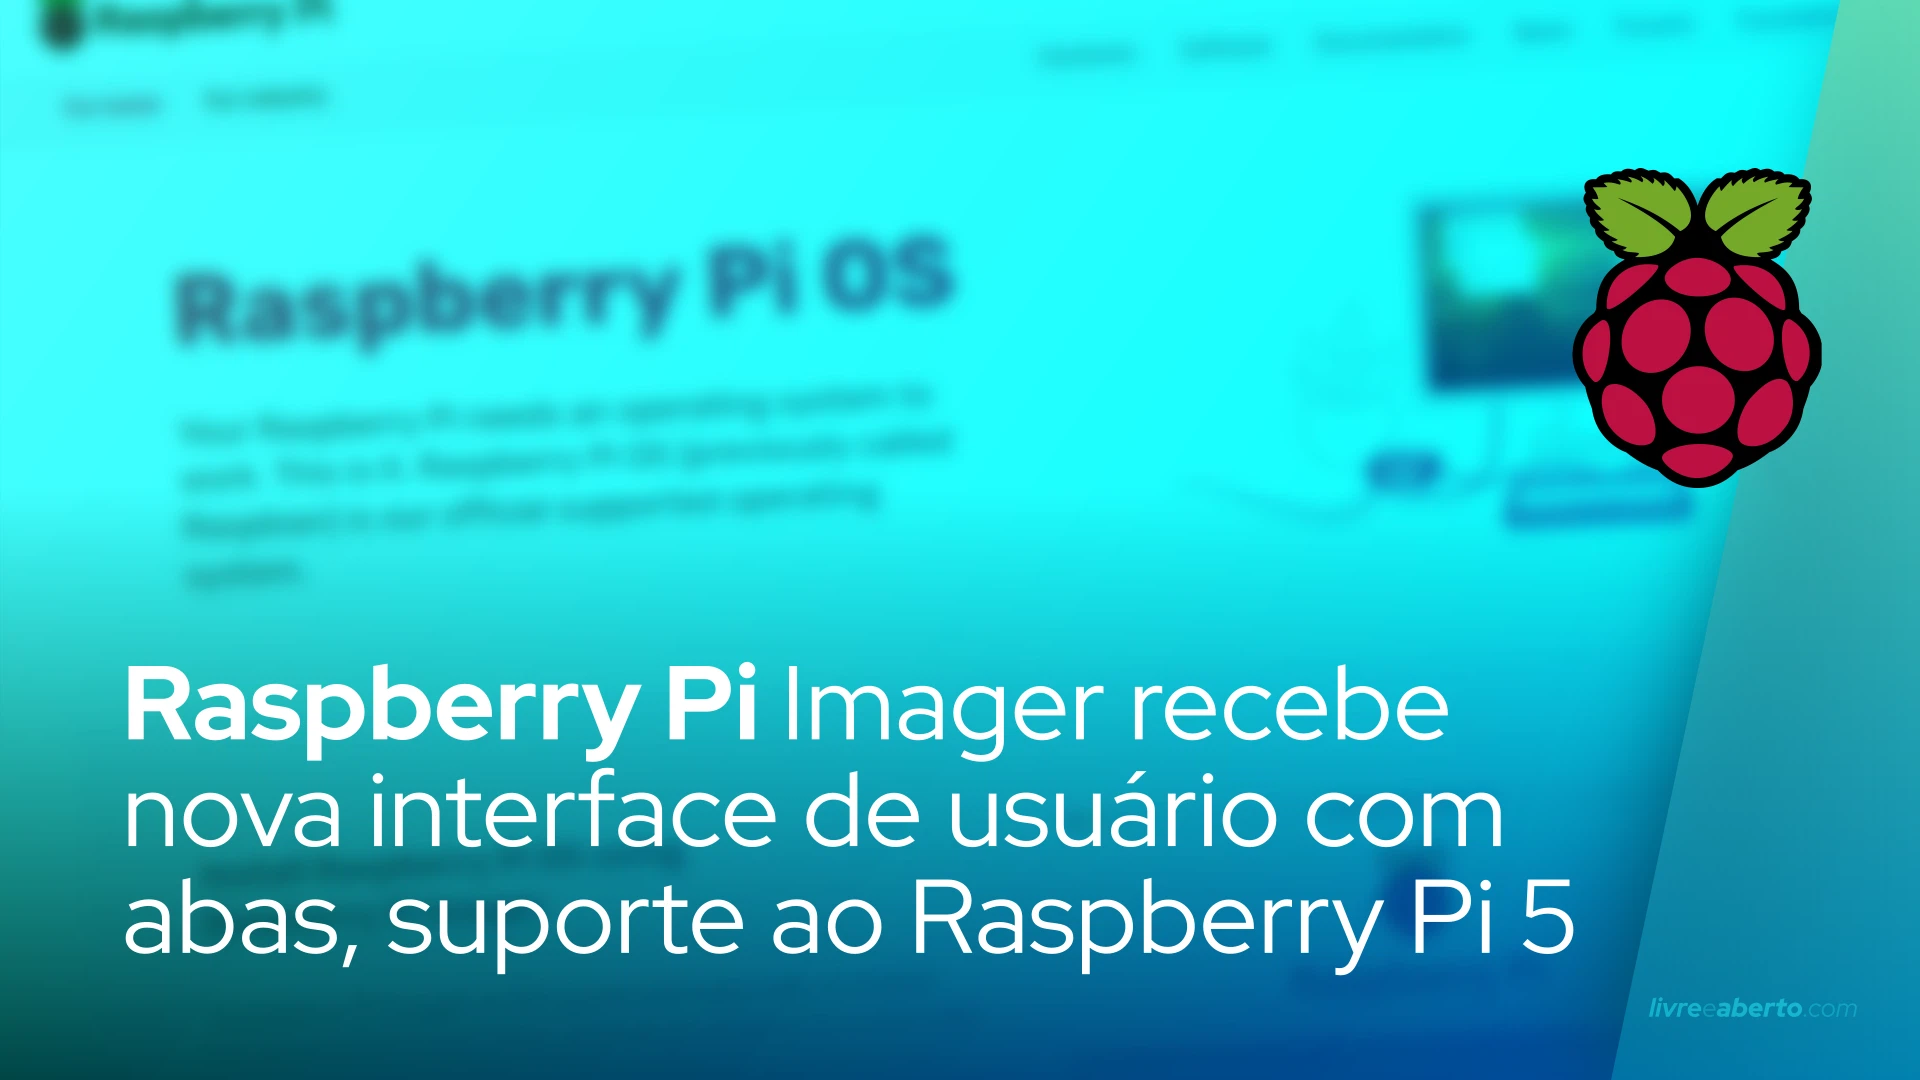 Raspberry Pi Imager recebe nova interface de usuário com abas, suporte ao Raspberry Pi 5